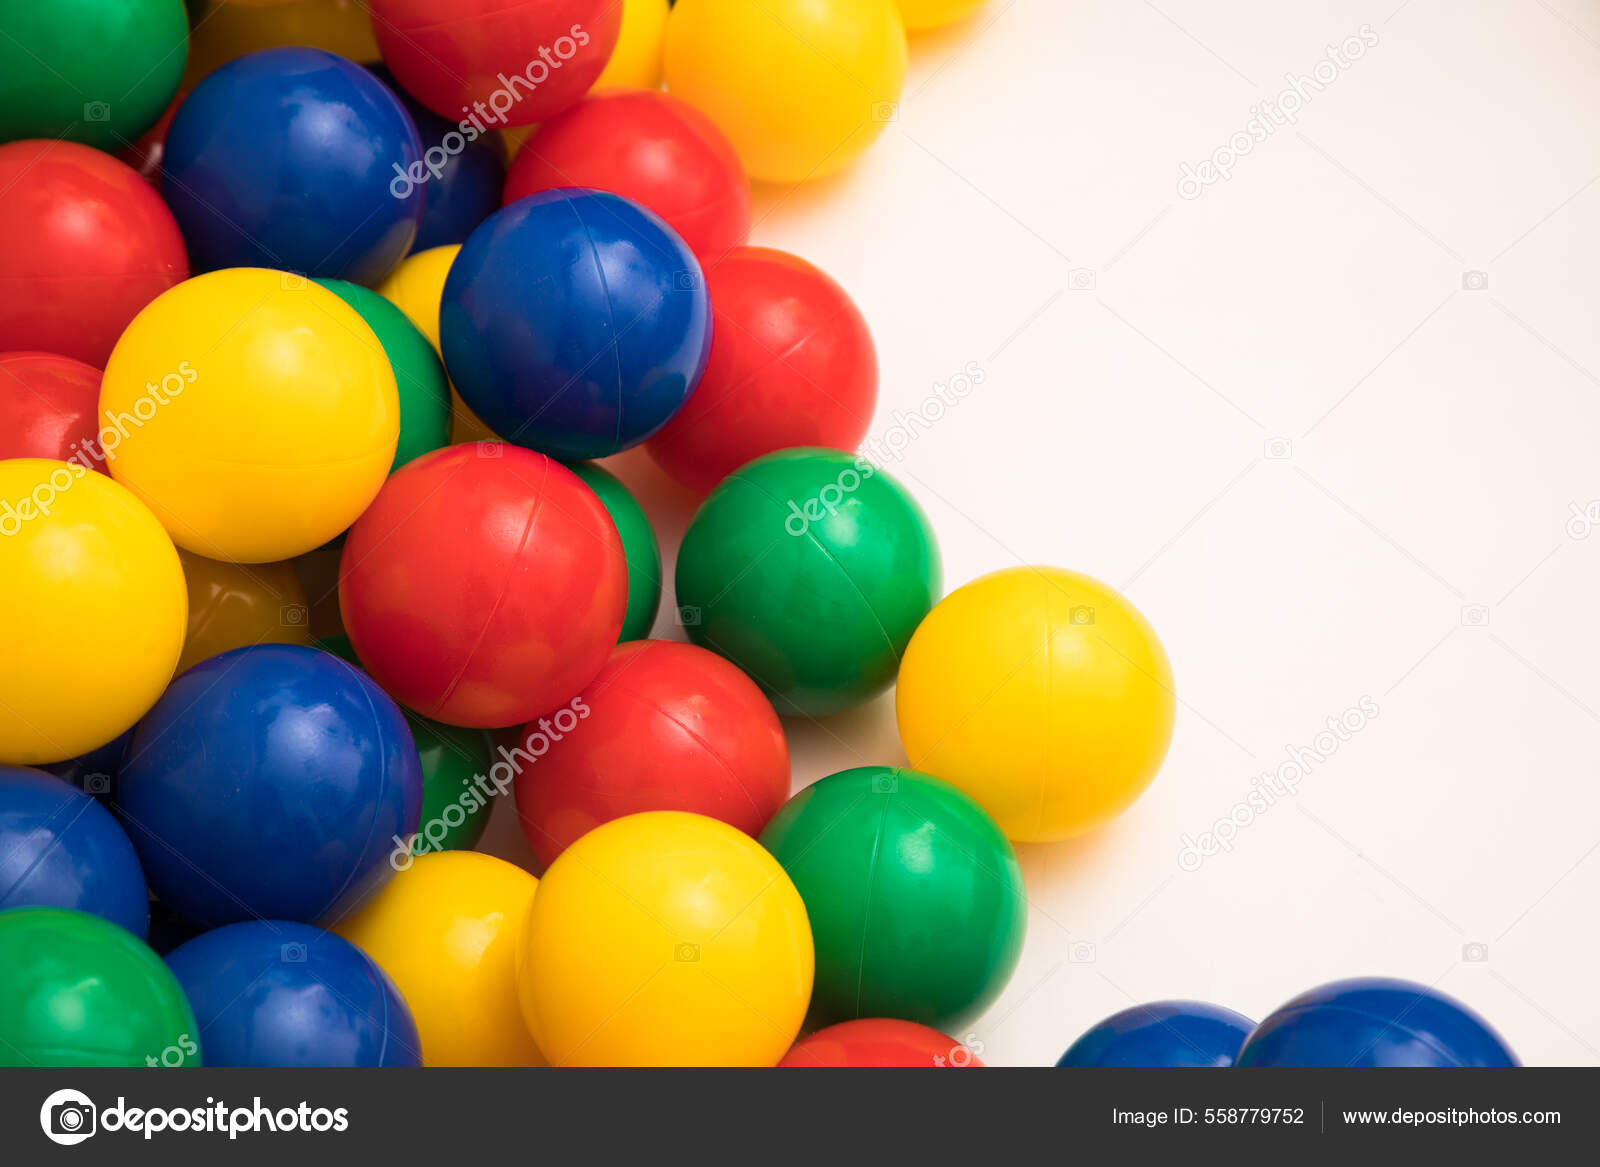 Fundo E Textura Das Bolas De Plástico Multicolorido. Jogo De Bola